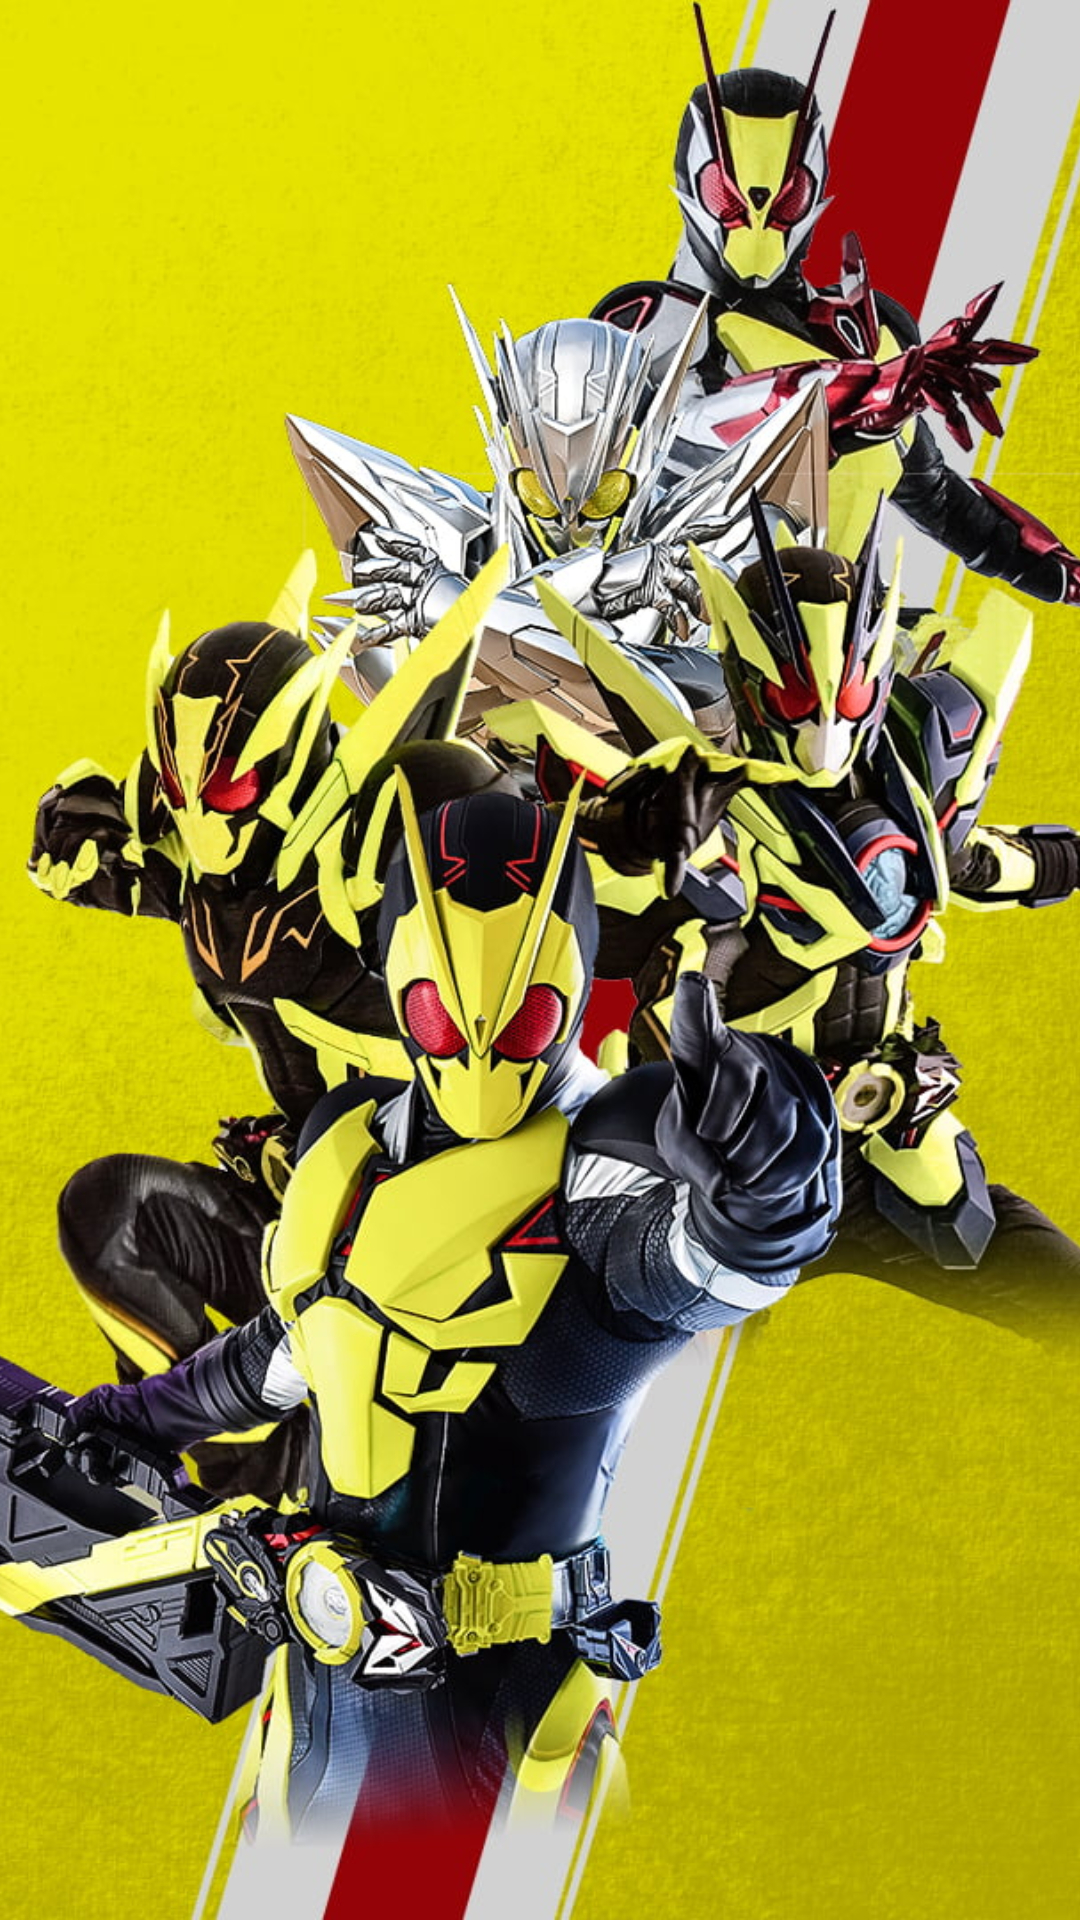 Kamen Rider Zero One Wallpapers